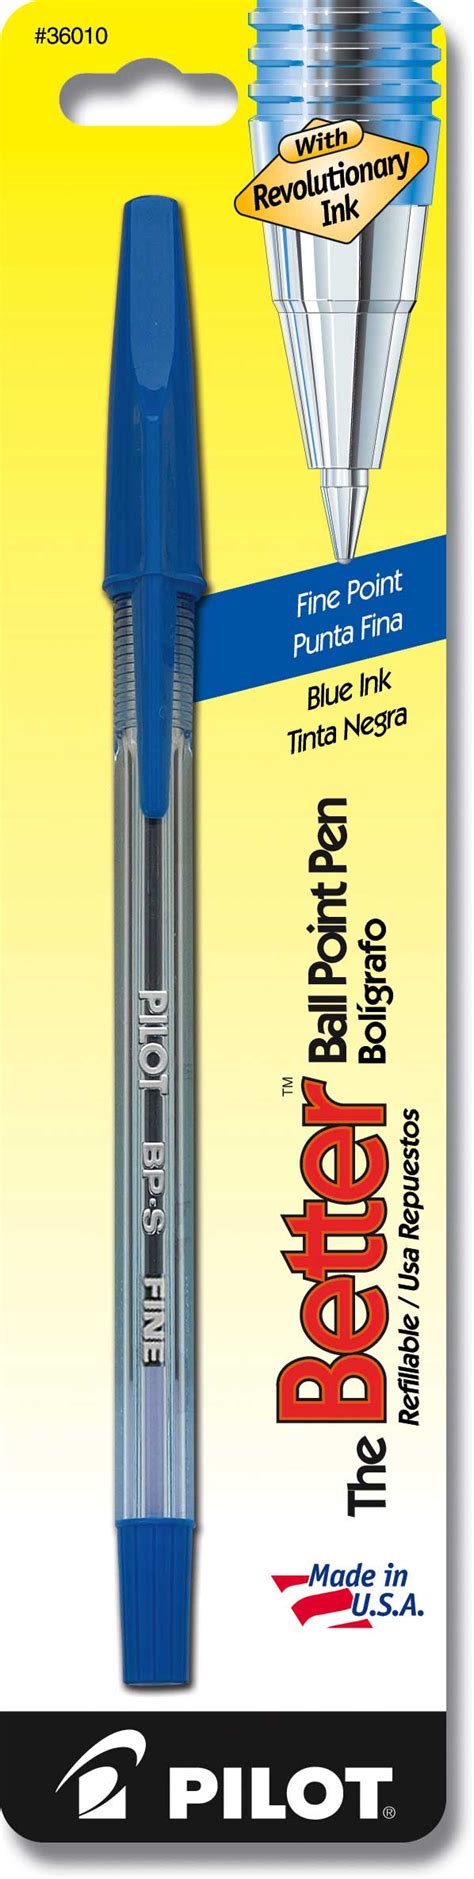 Pilot Pens Best Pens Pen